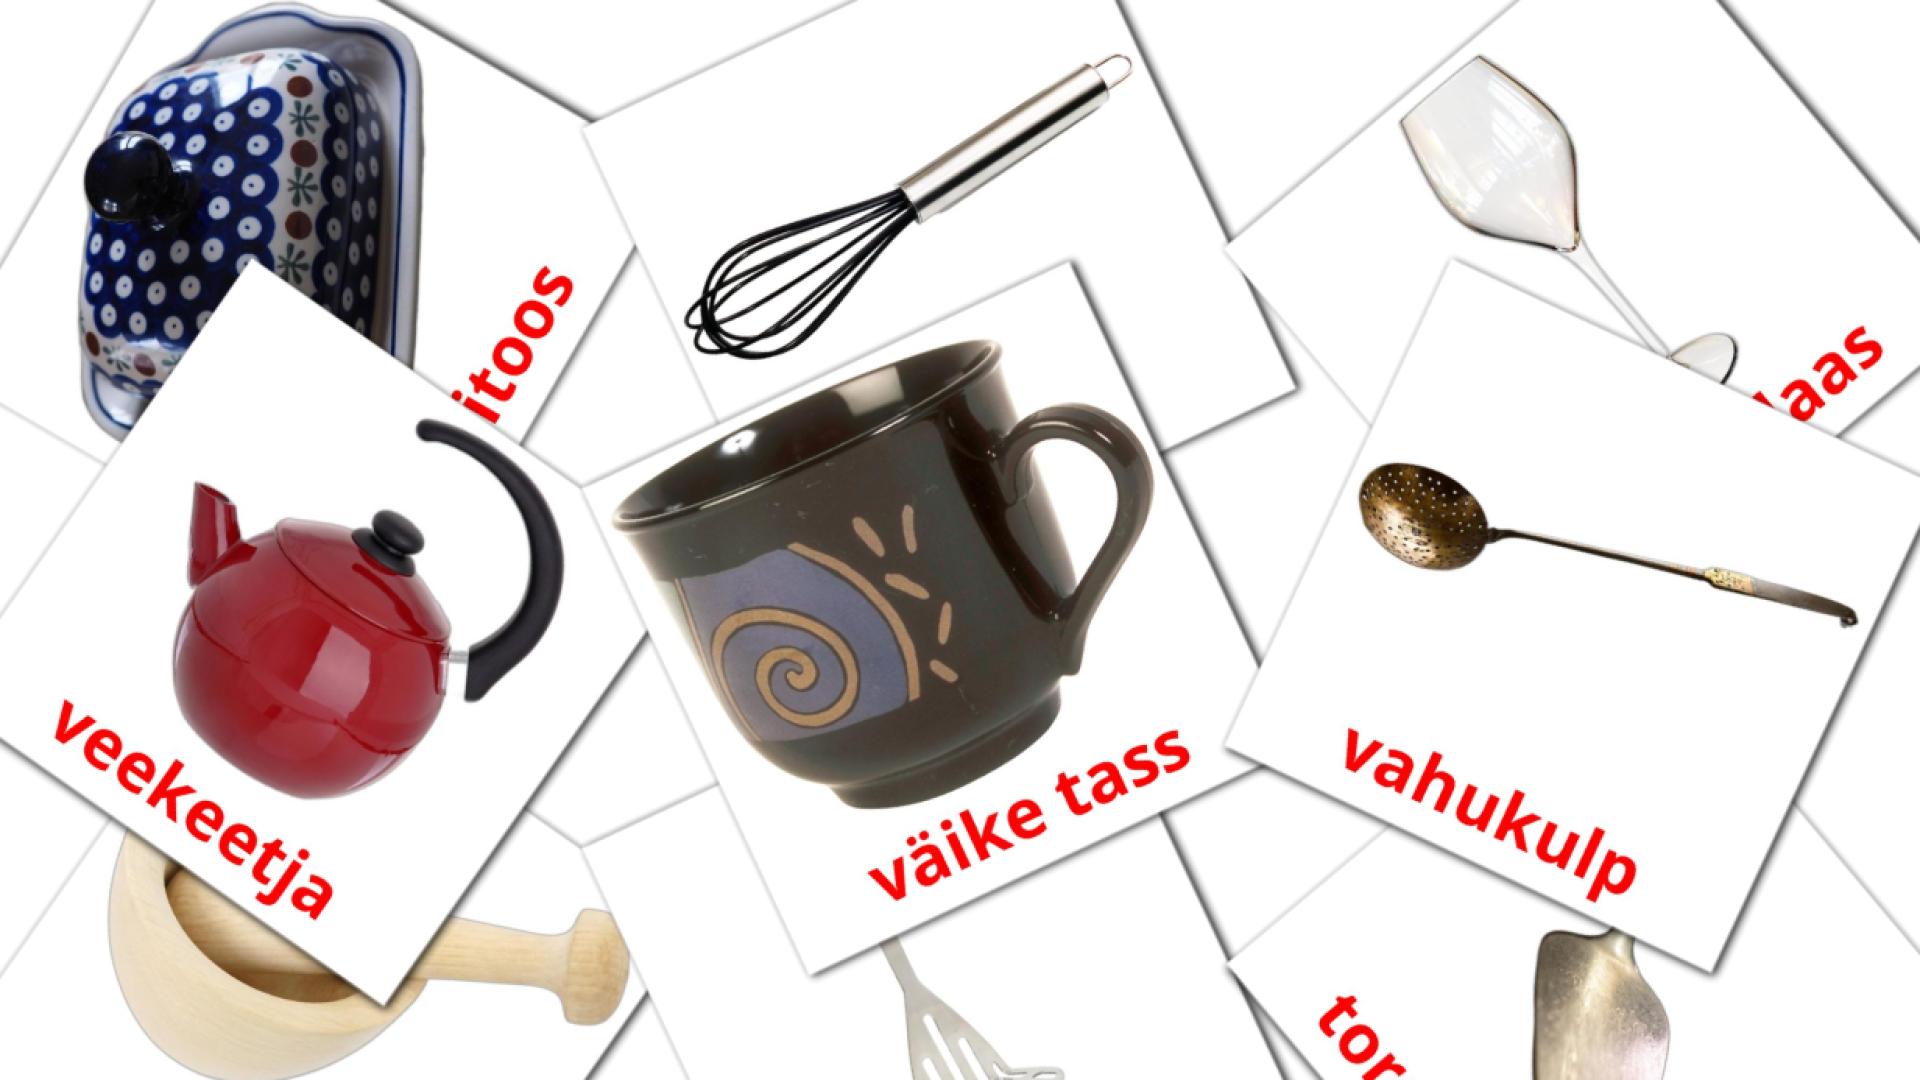 Köök estonian vocabulary flashcards